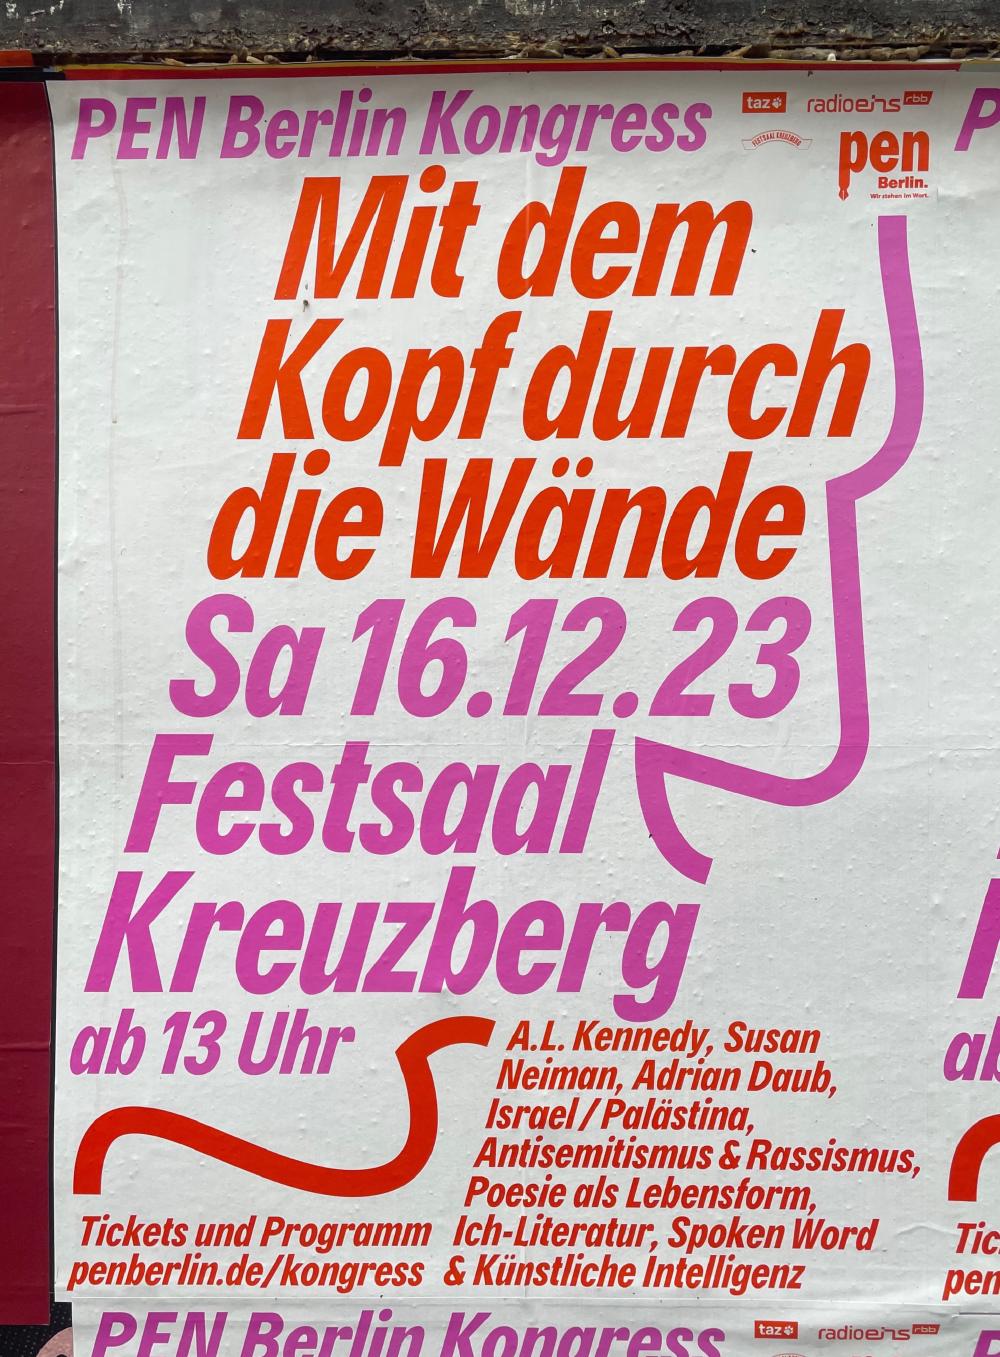 PEN Berlin Kongress poster